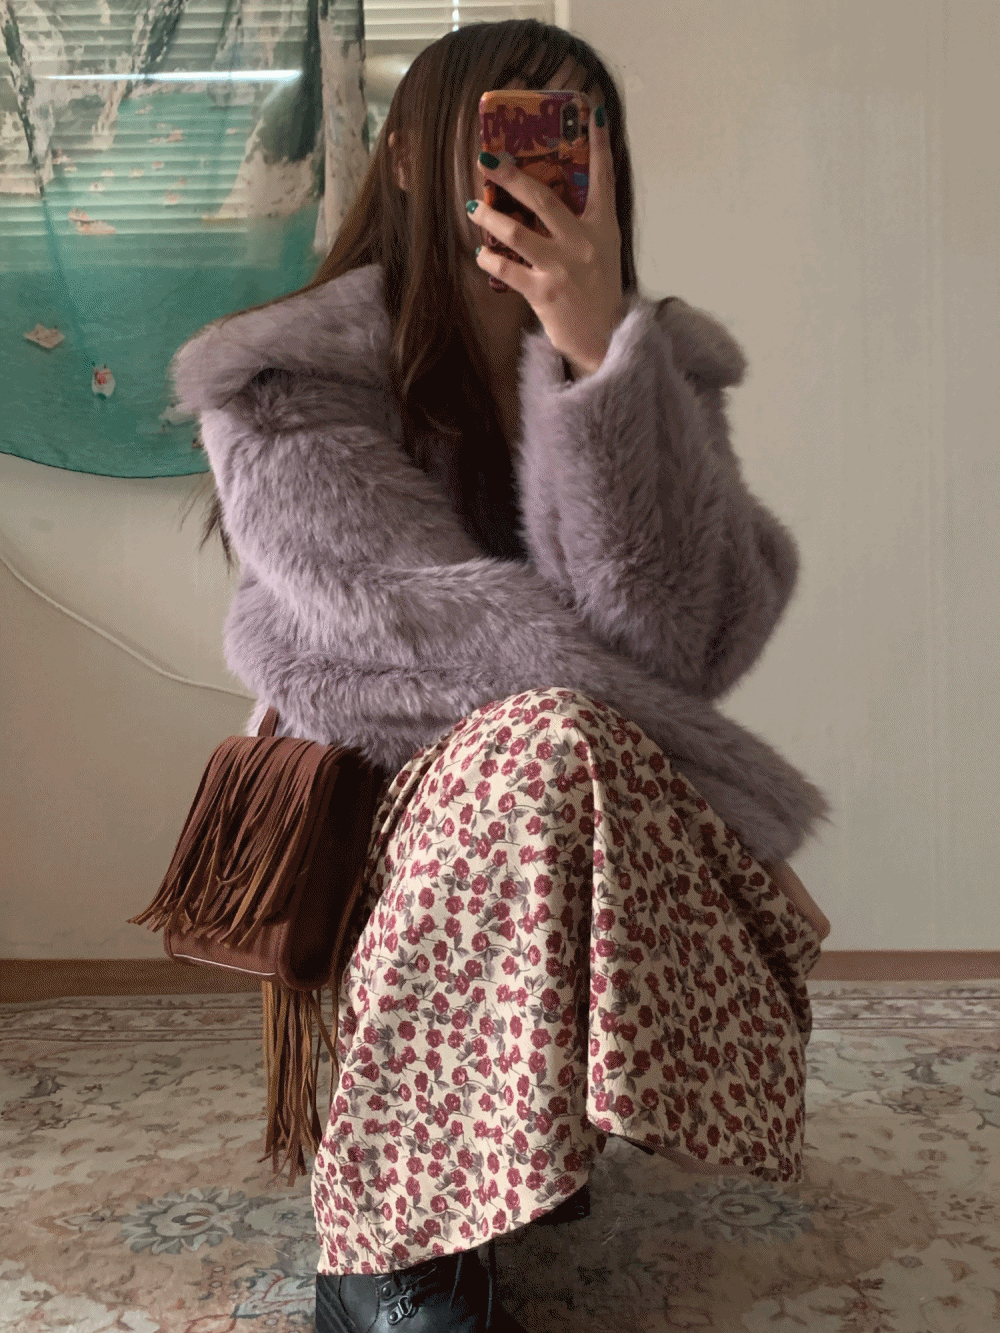 (주문폭주로 지연중입니다!( ⸝⸝⸝ʚ̴̶̷̆ωʚ̴̶̷̆⸝⸝)ﻌﻌﻌ♥) Fairy fur jacket / 3 colors